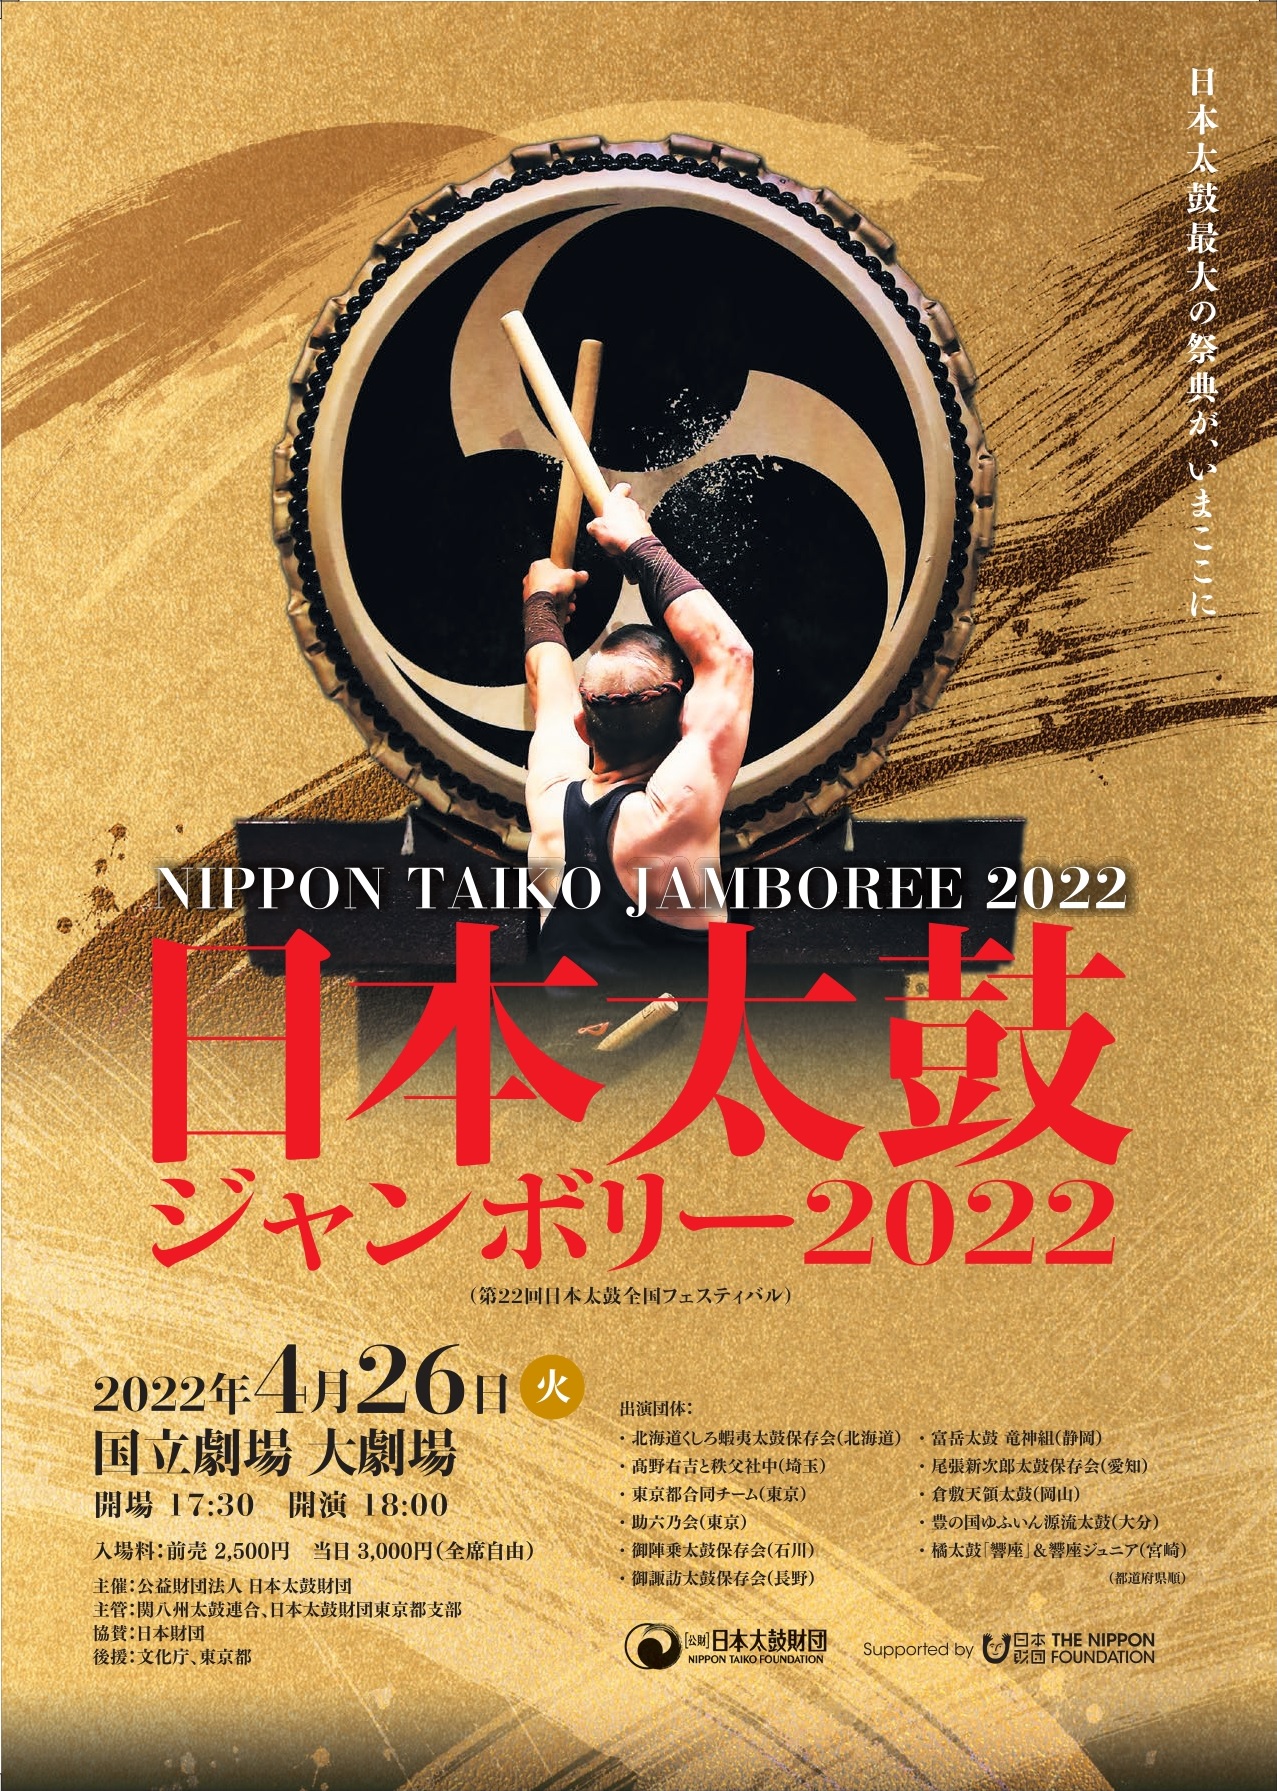 日本太鼓ジャンボリー2022(第22回日本太鼓全国フェスティバル)